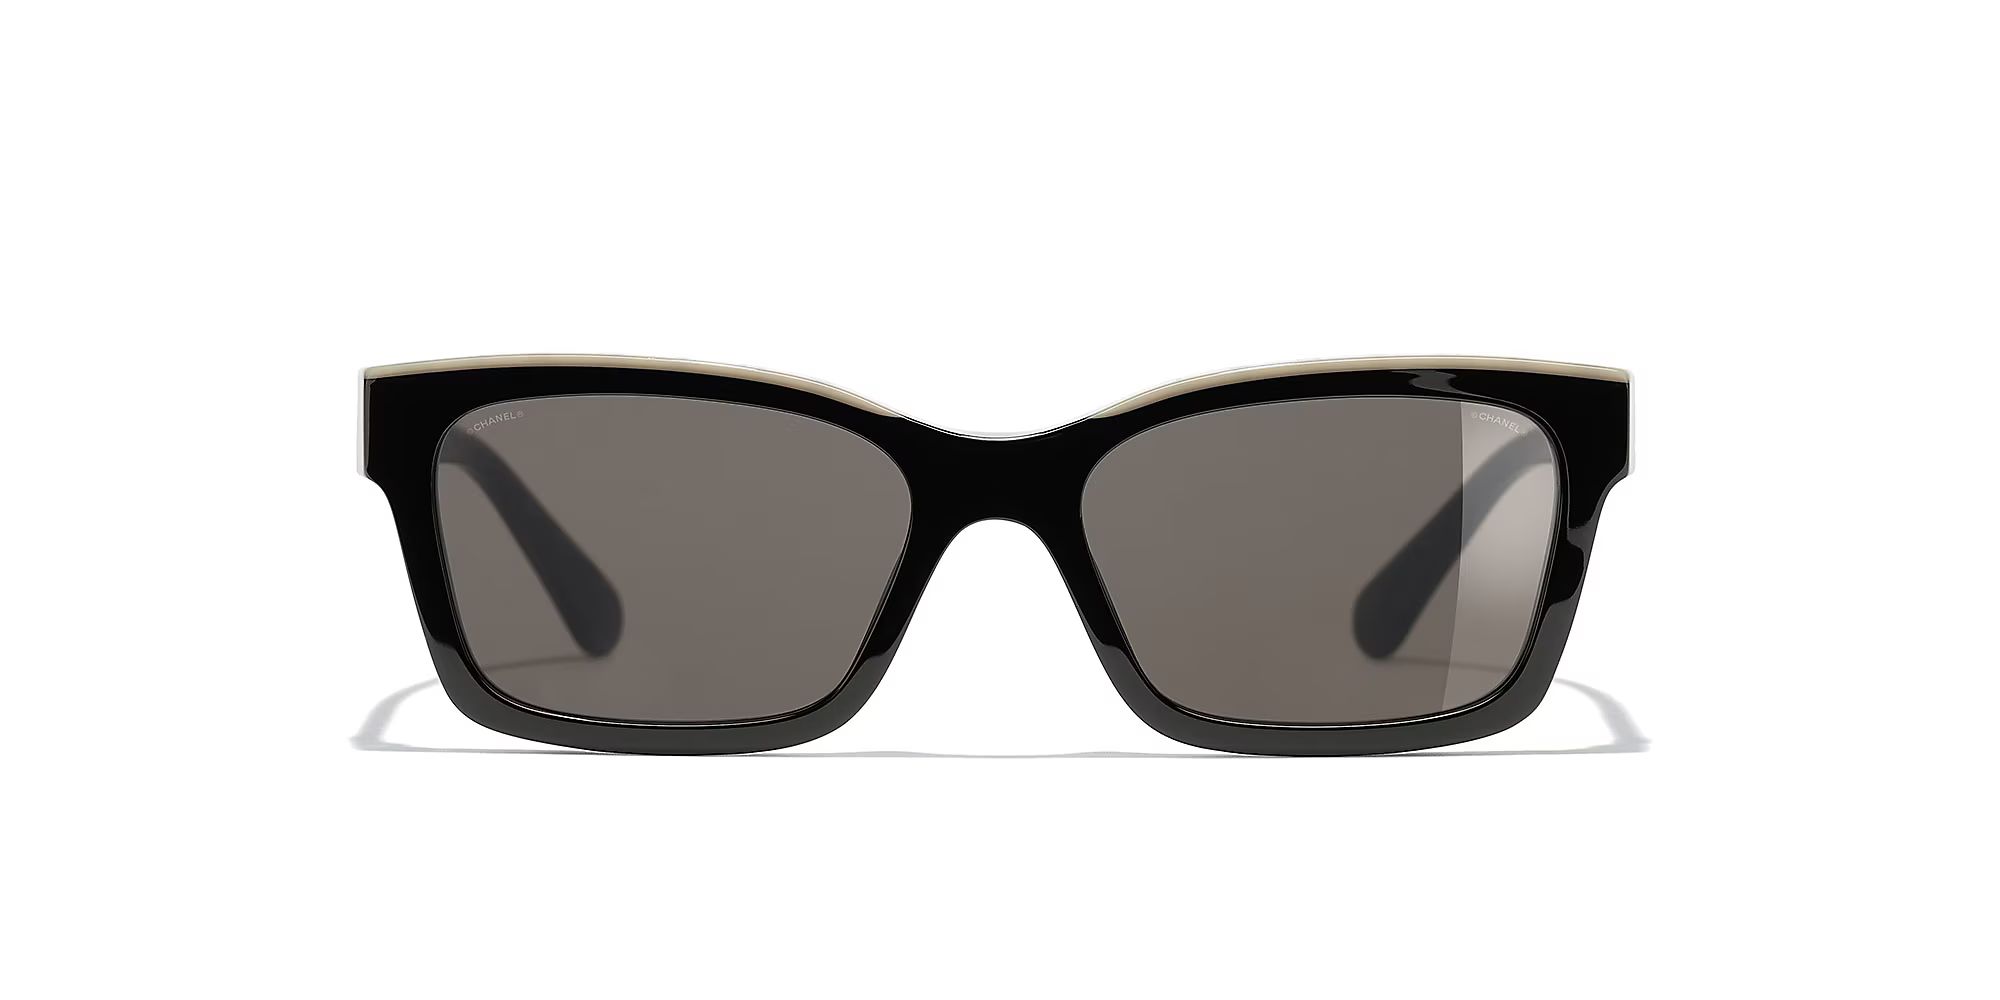 Chanel Unisex Square Sunglasses CH5417 - Frame color: Negro y Beige, Lens color: Marrón | Sunglass Hut EU